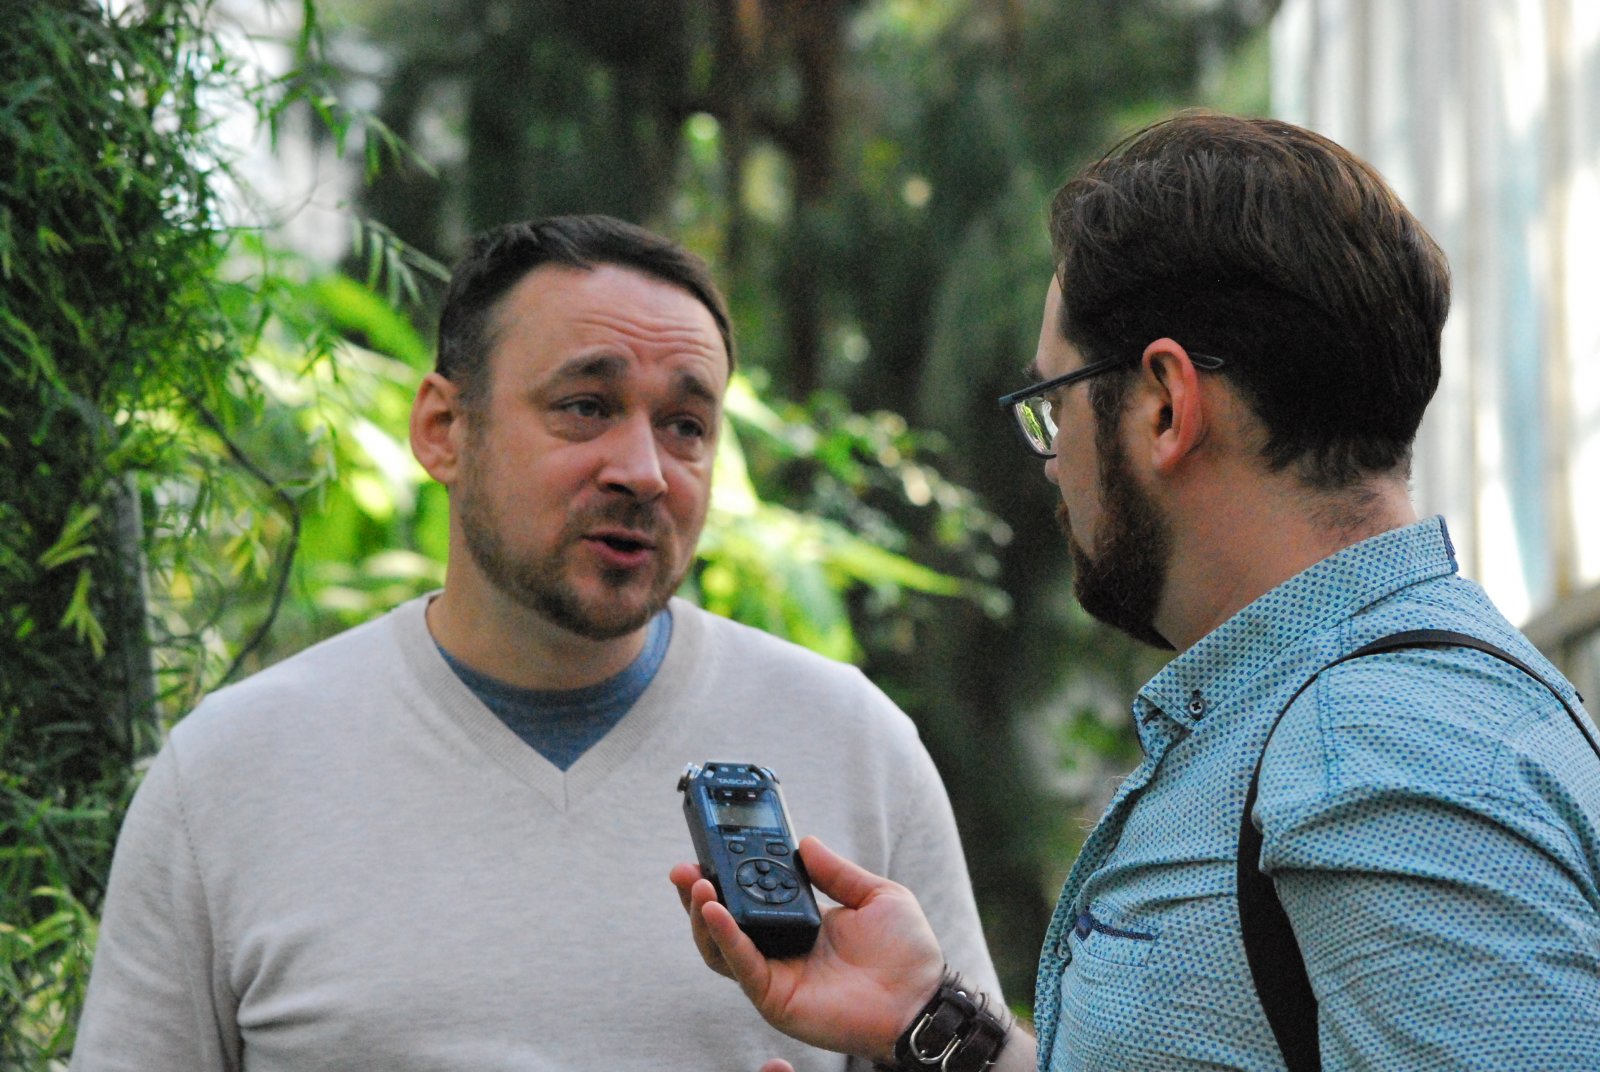 Михаил Ямбуров, директор ботсада, и Андрей Ефремов, корреспондент "Радио России" Томск